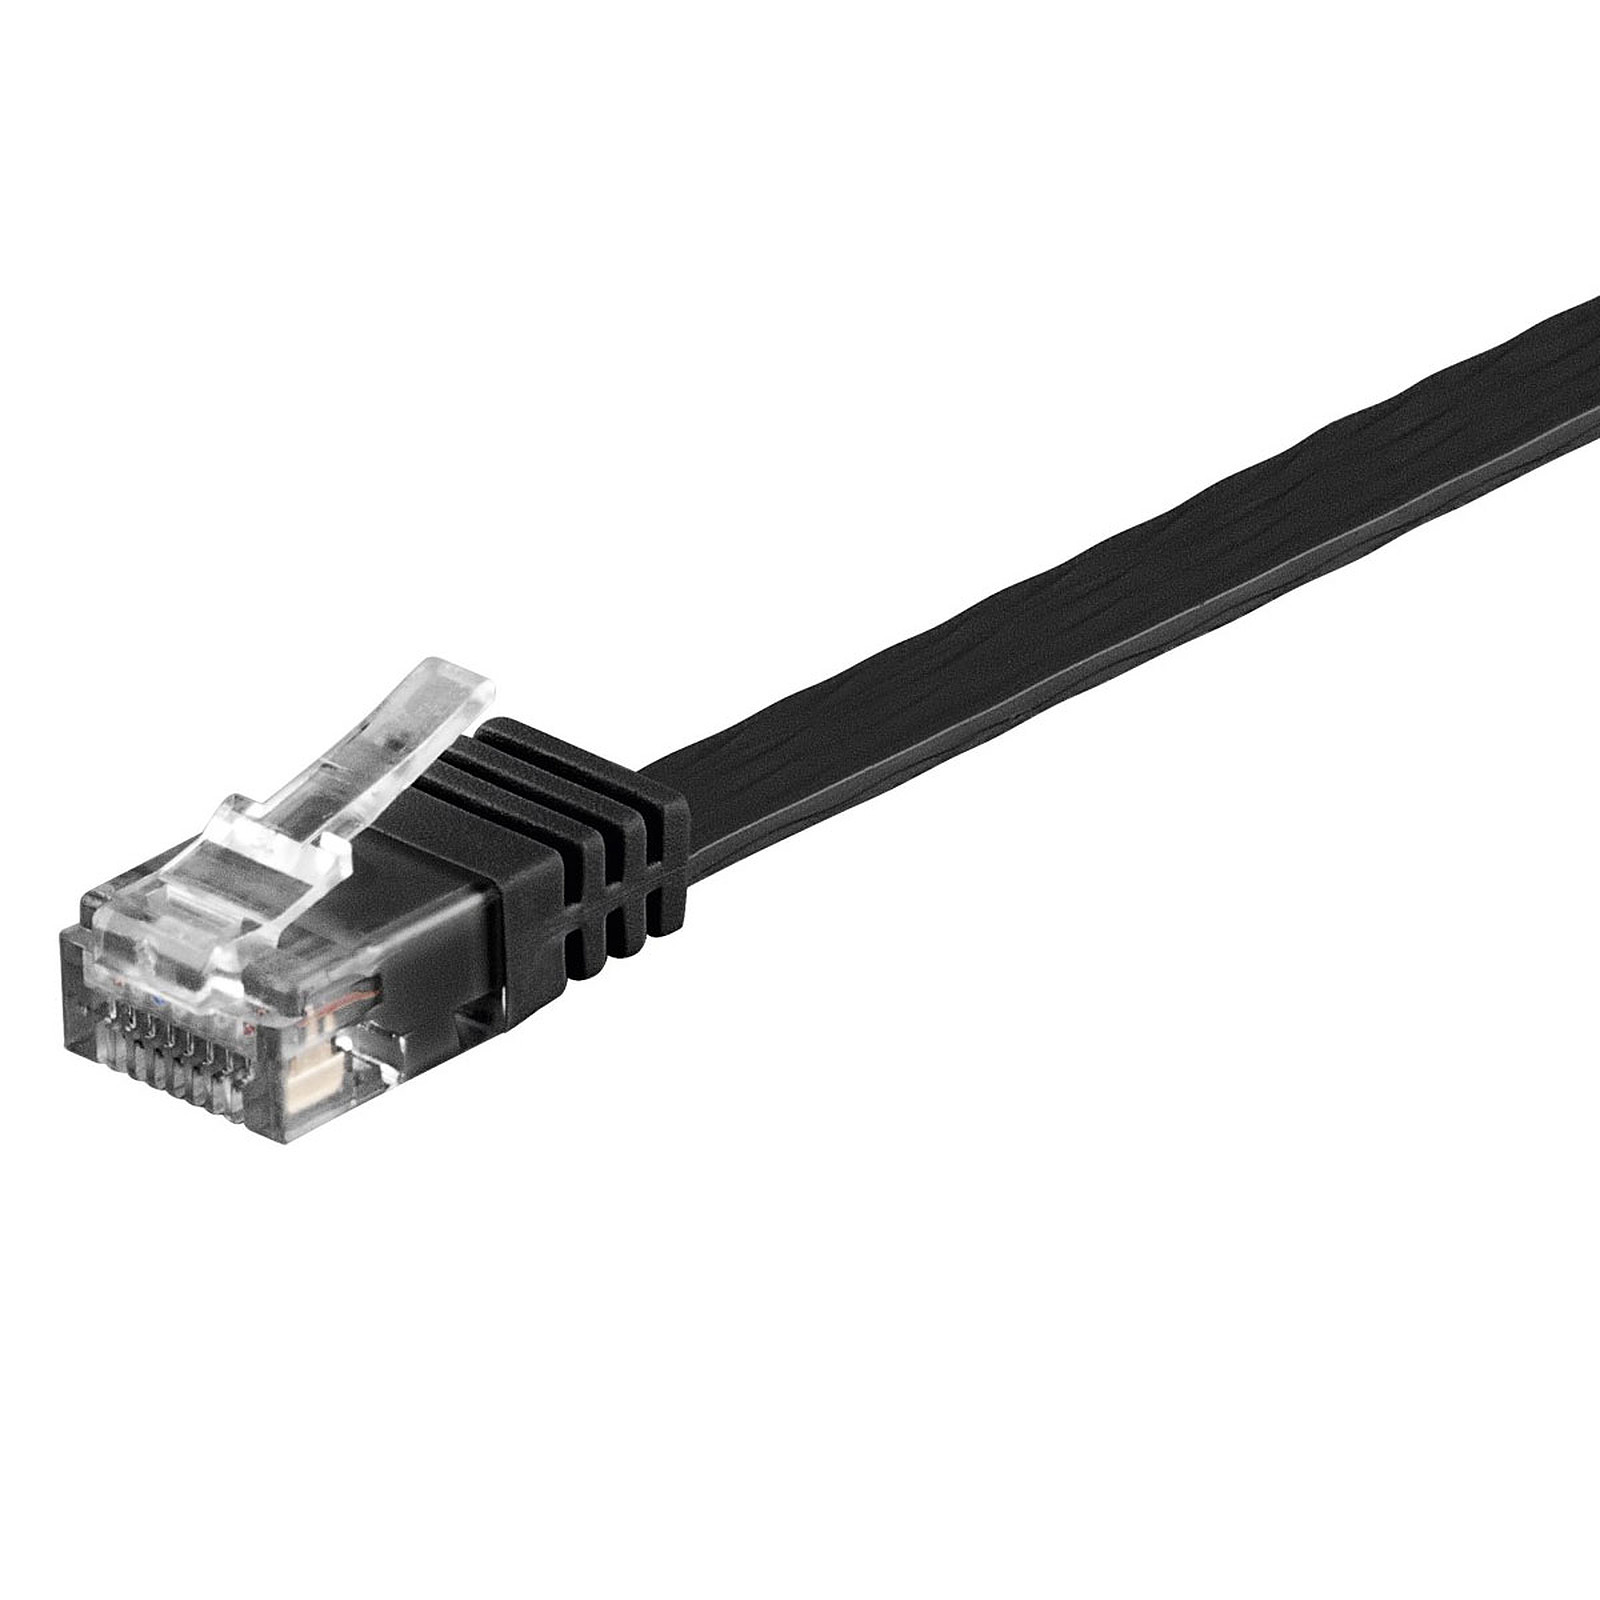 Cable RJ45 plat categorie 6 U/UTP 2 m (Noir) - Cable RJ45 Generique